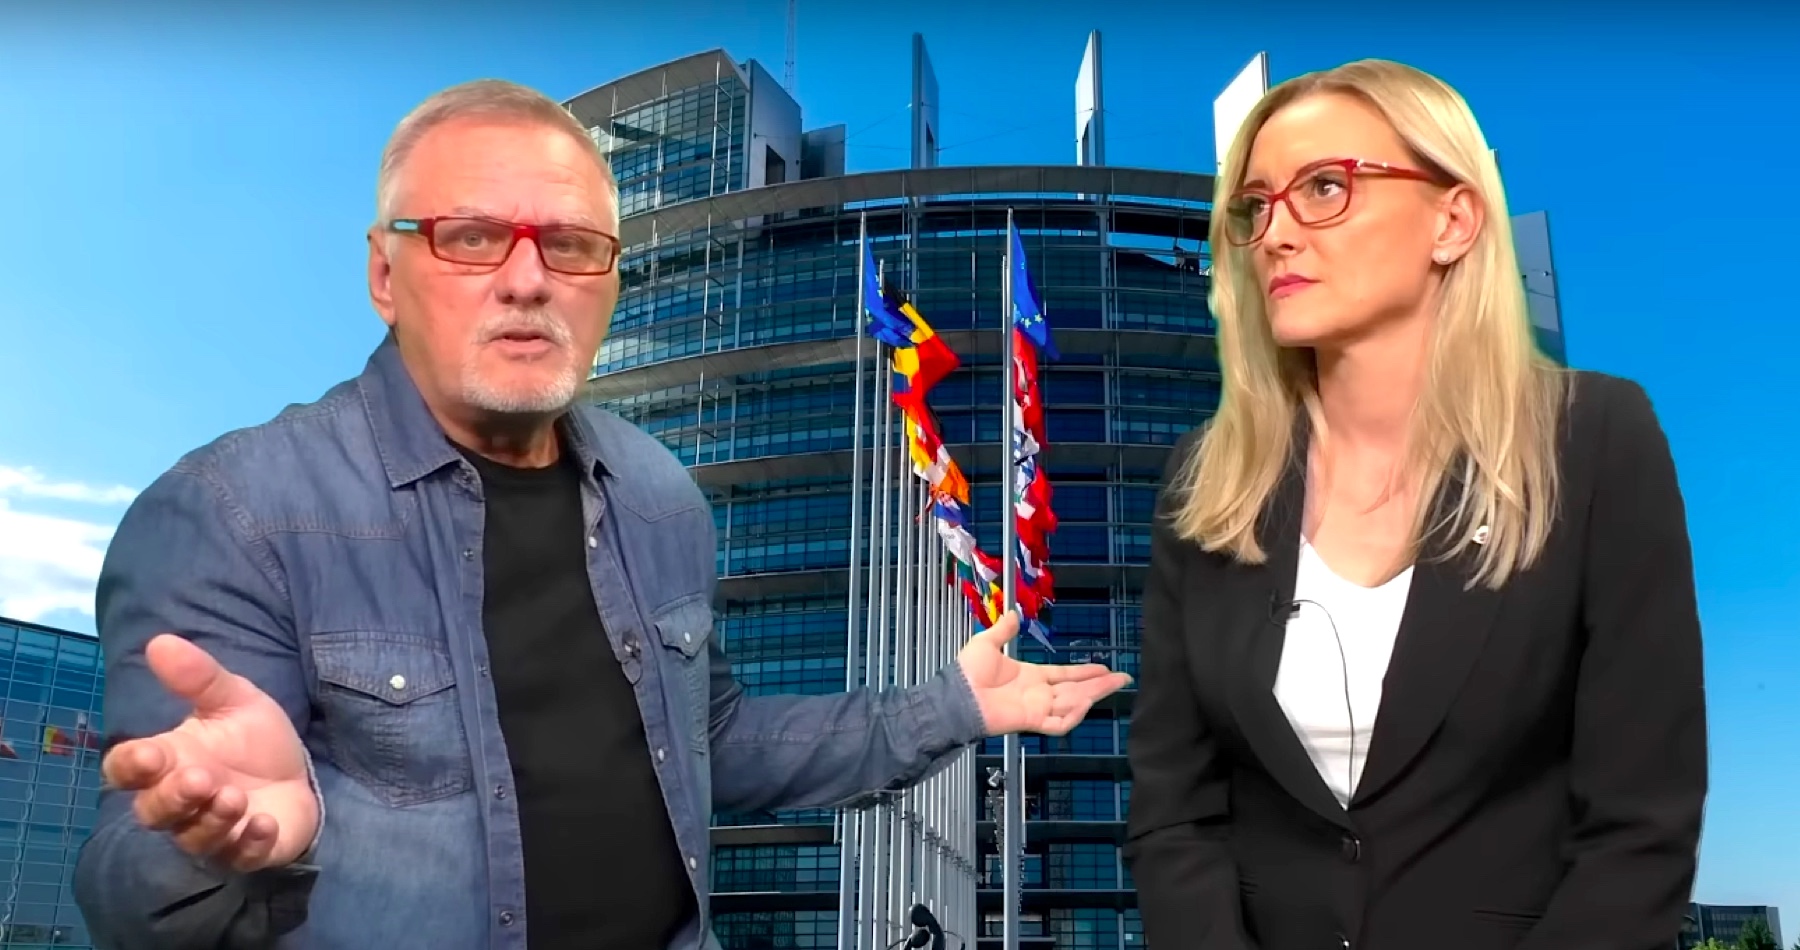 VIDEO: Laššáková & Štubniak o spolupráci slovenských vlastencov uchádzajúcich sa o dôveru v eurovoľbách s prísľubom nápravy vecí verejných v rámci Európskej únie, aby sa prinavrátil pôvodný zmysel jej poslania